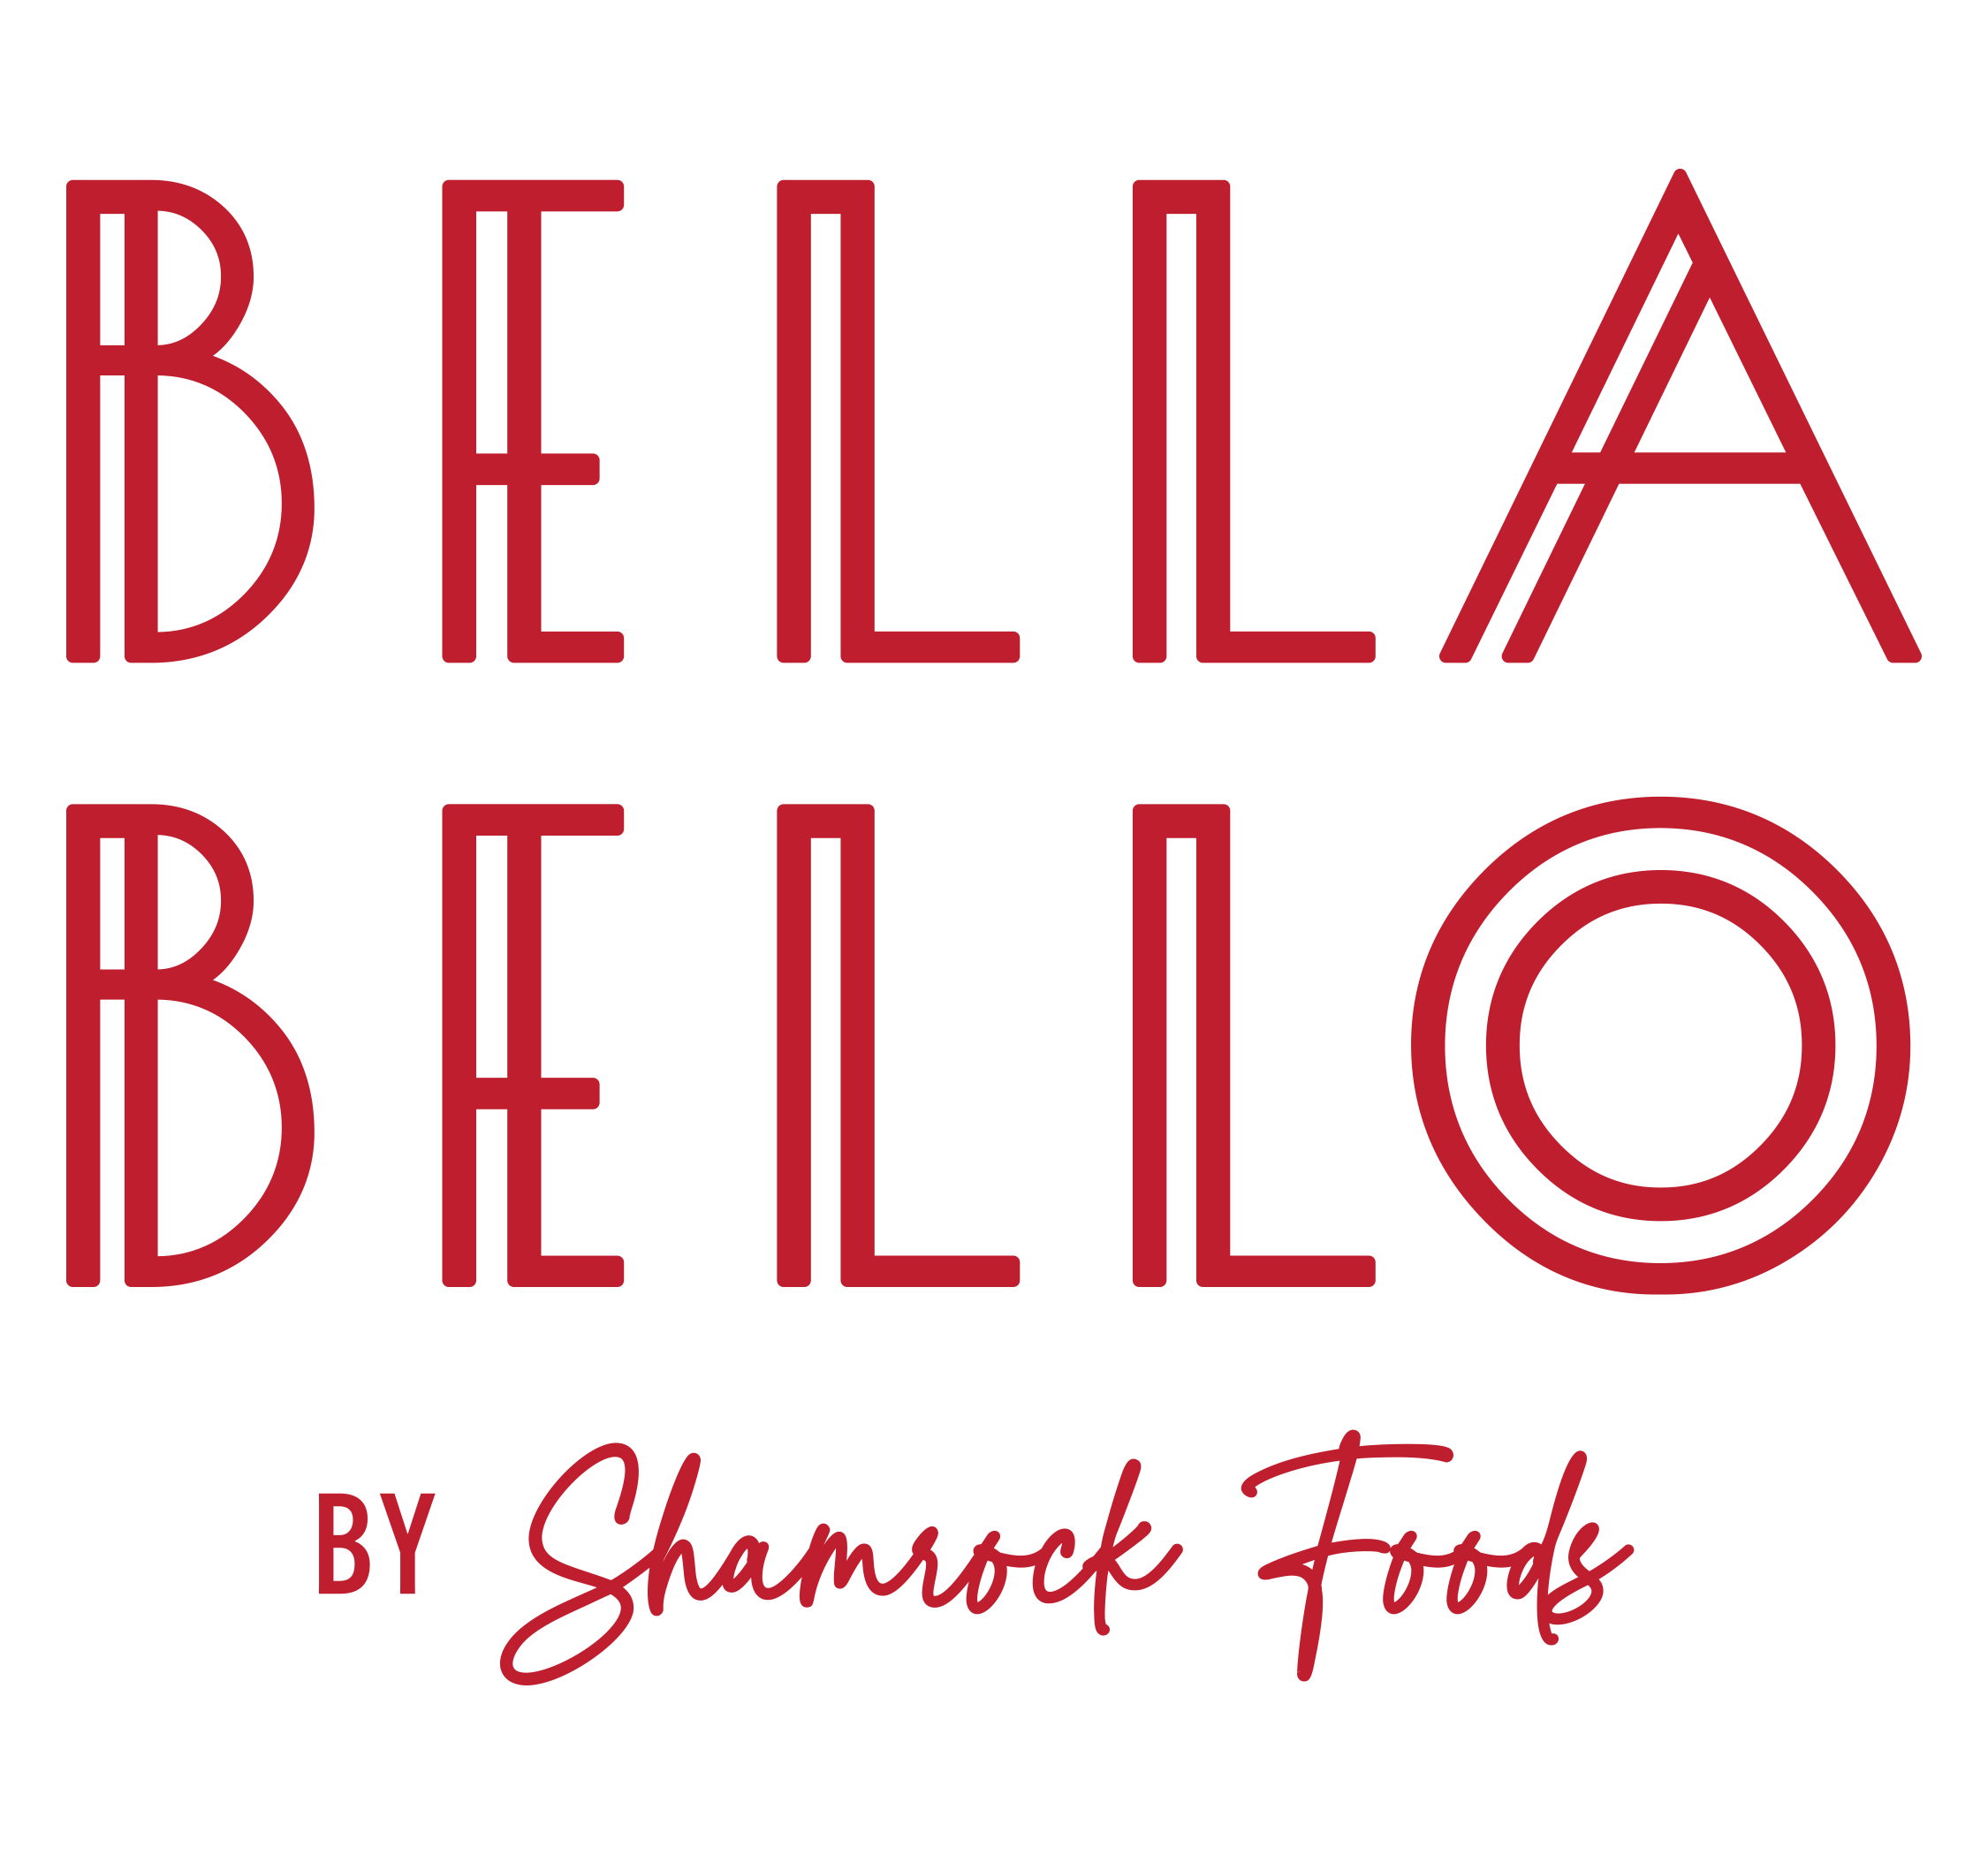 Bella Bello by Shamrock Foods Logo